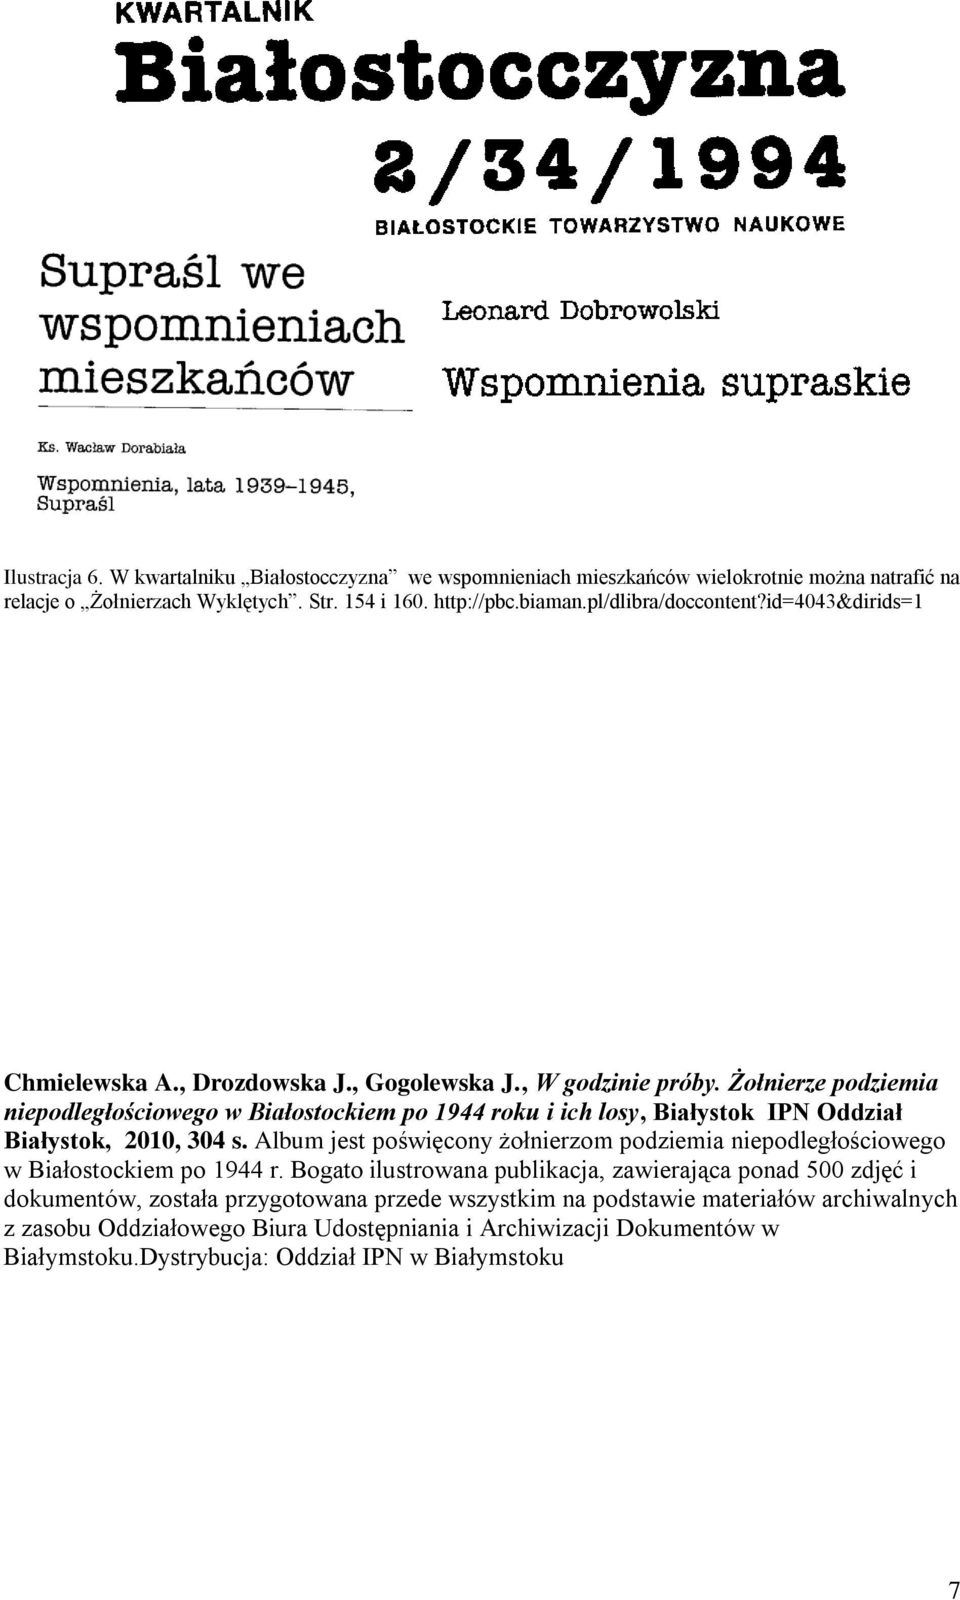 Żołnierze podziemia niepodległościowego w Białostockiem po 1944 roku i ich losy, Białystok IPN Oddział Białystok, 2010, 304 s.